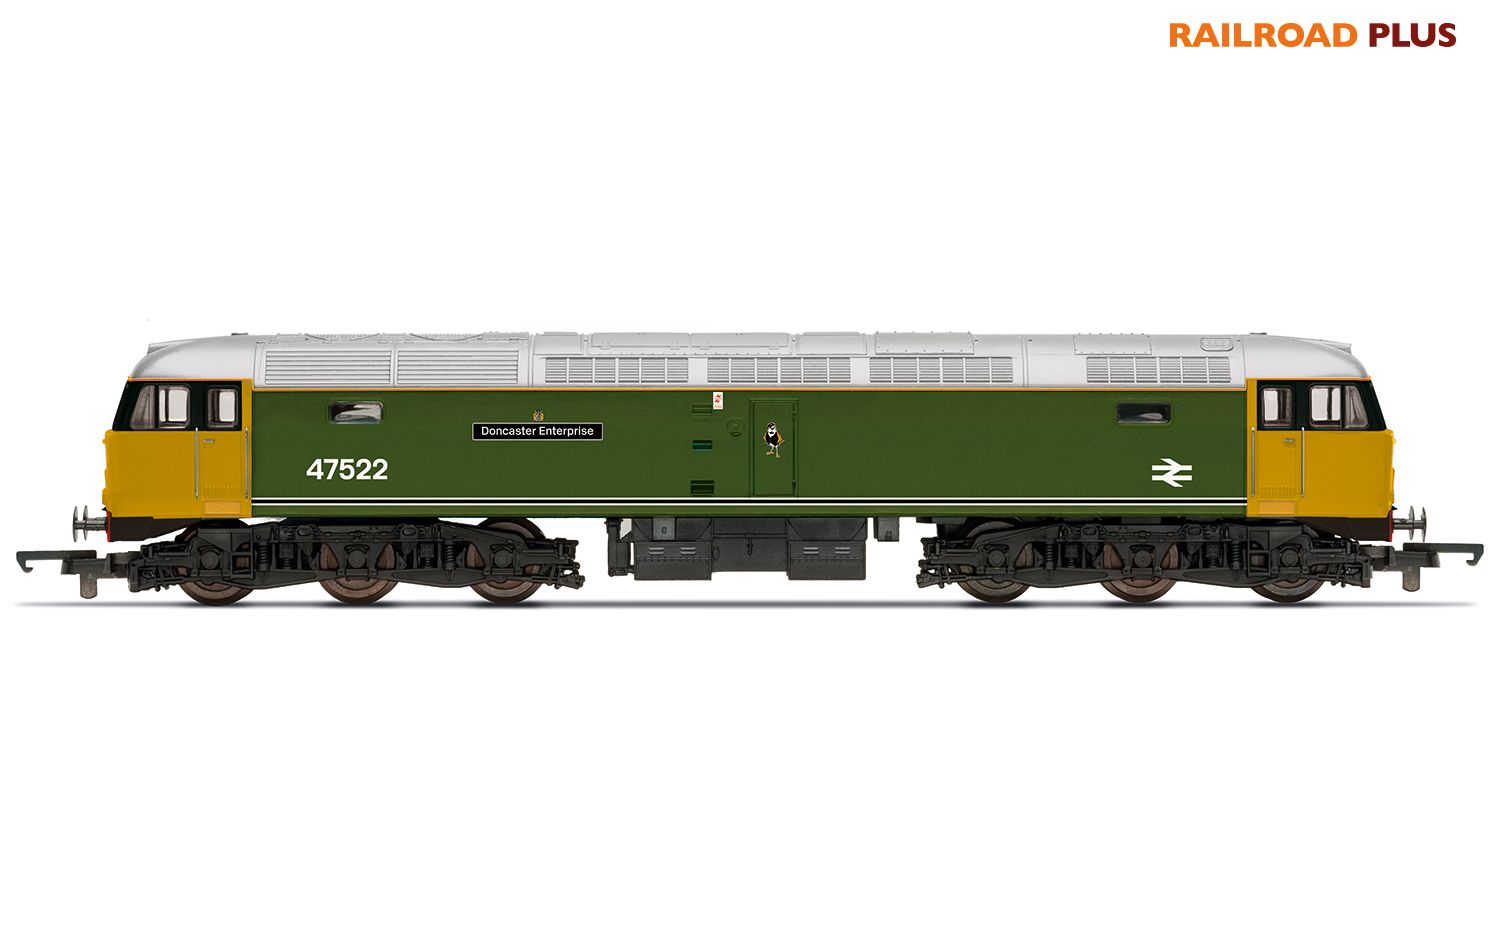 Hornby Railroad Plus R30382 RailRoad Plus BR Class 47 Co-Co 47522 Doncaster Enterprise